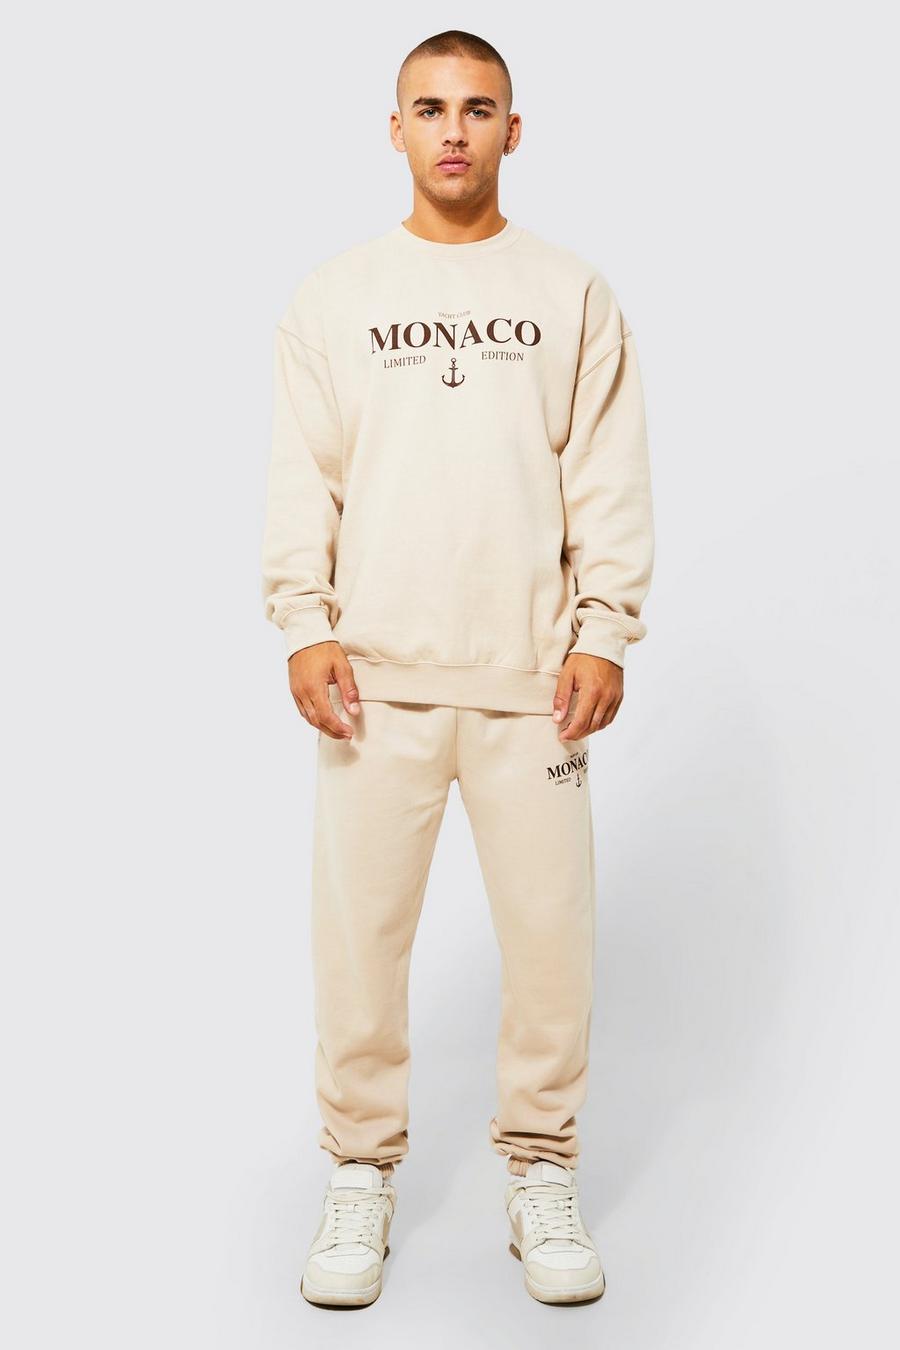 Sand beige Oversized Monaco Sweatshirt Tracksuit